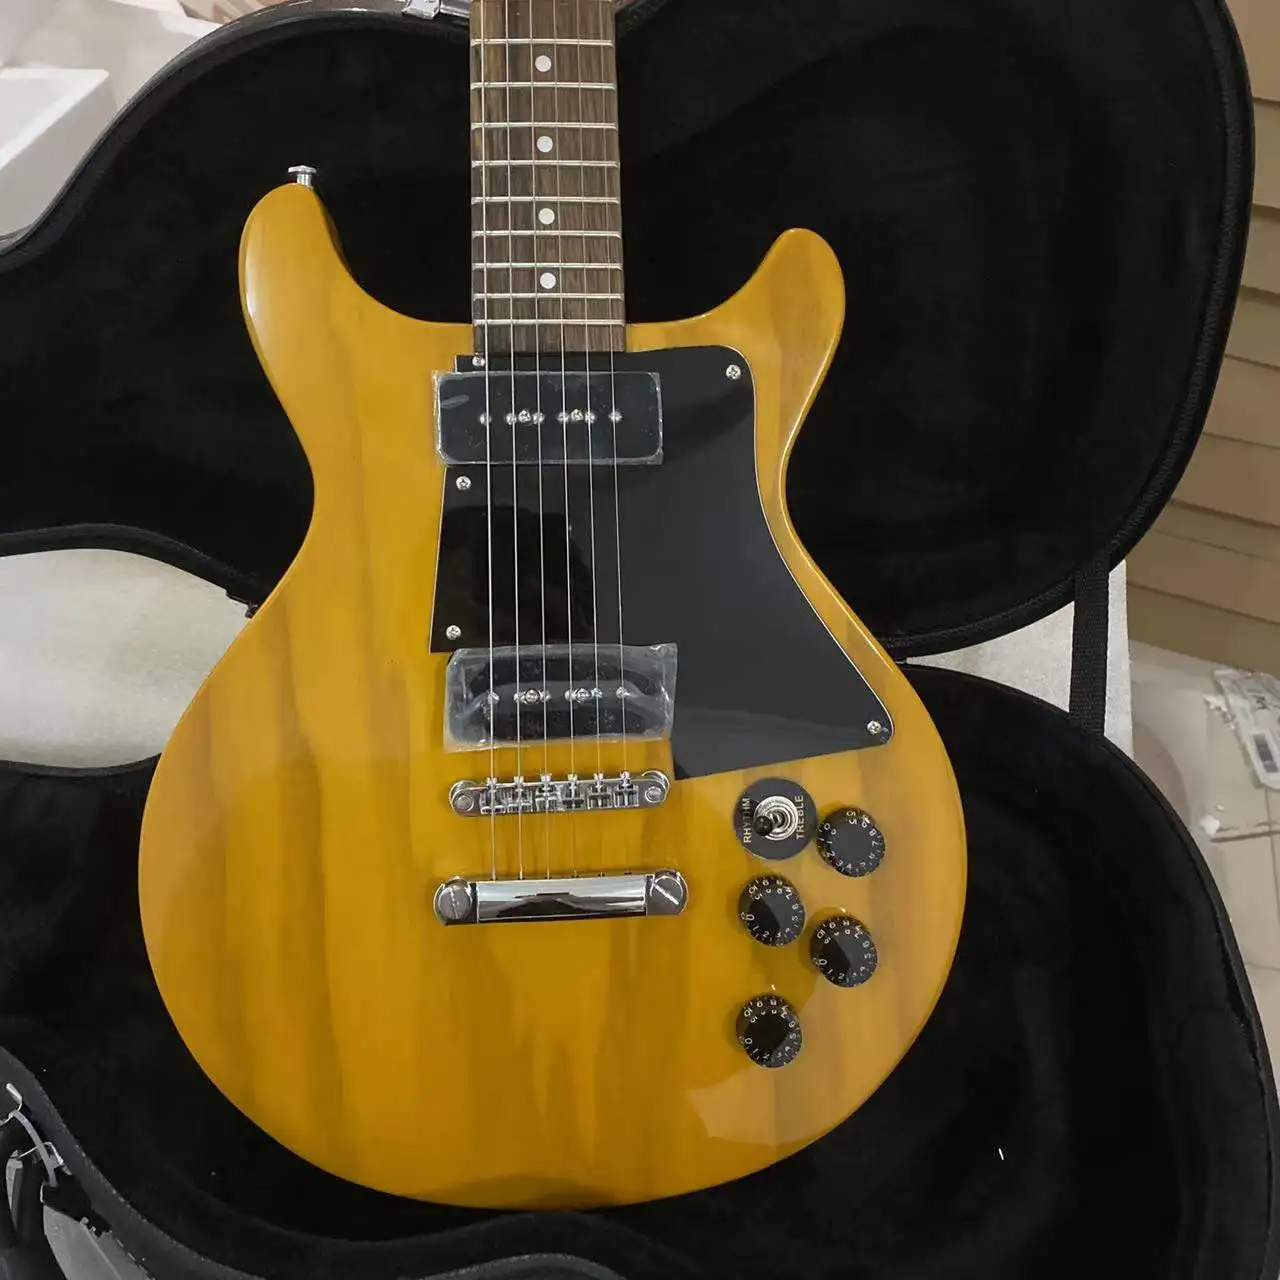 1960 детская Специальная двойная репродукция электрическая гитара прозрачный желтый цвет Высокое качество гитара бесплатная доставка